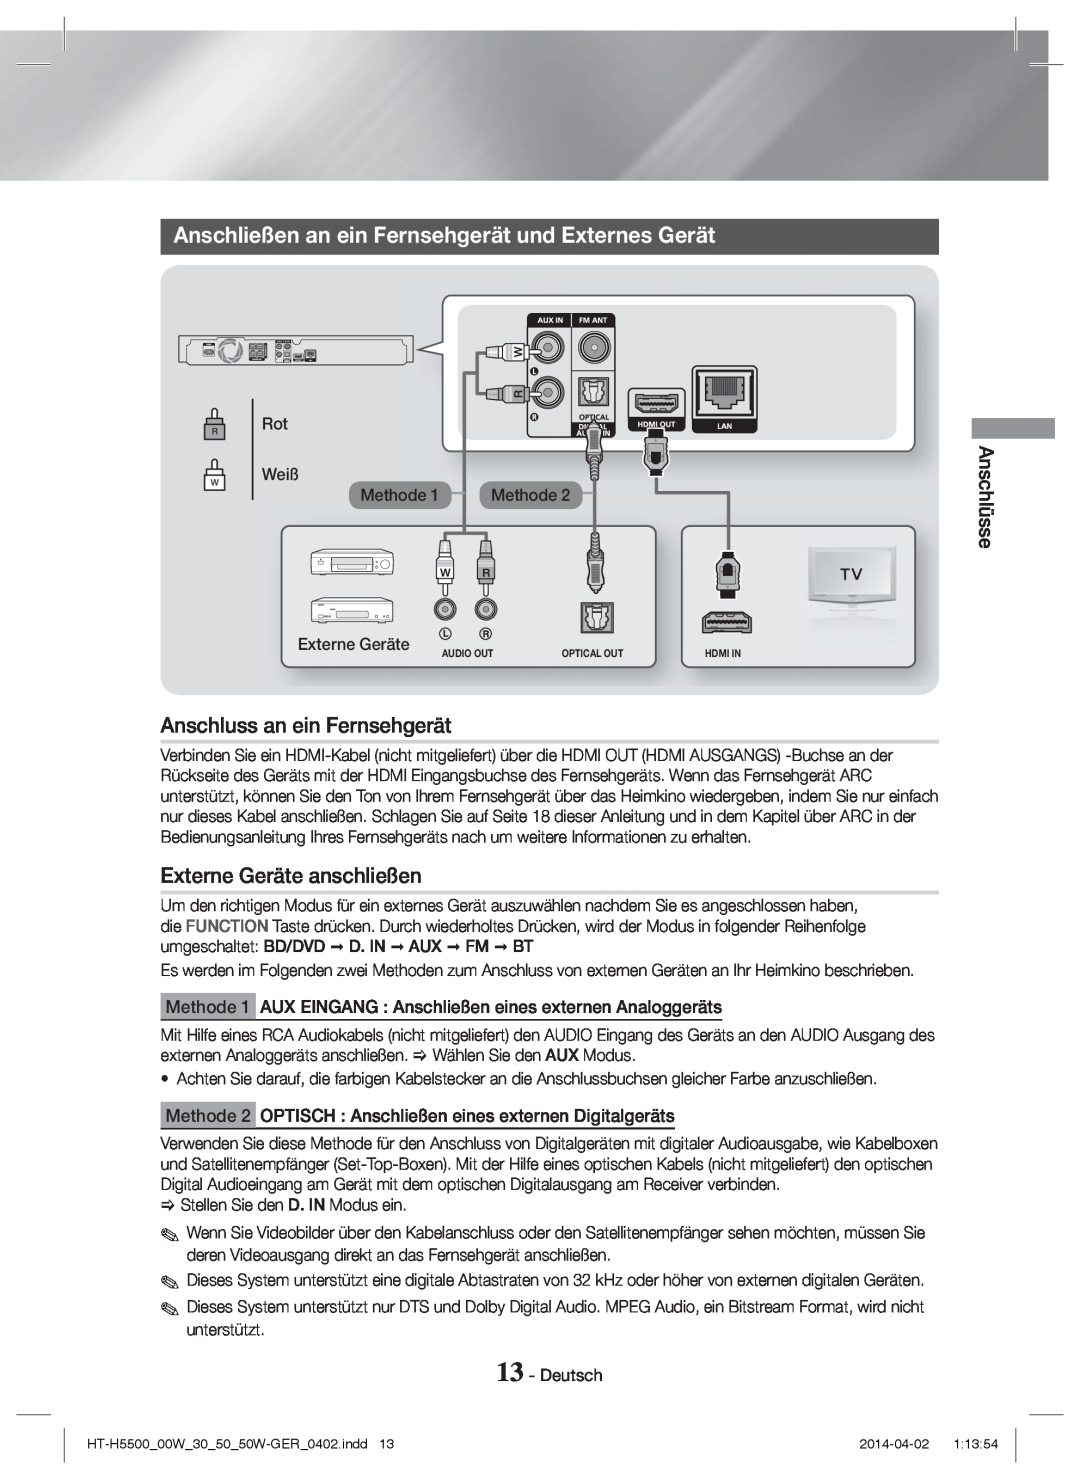 Samsung HT-H5550/ZF manual Anschließen an ein Fernsehgerät und Externes Gerät, Anschluss an ein Fernsehgerät, Anschlüsse 